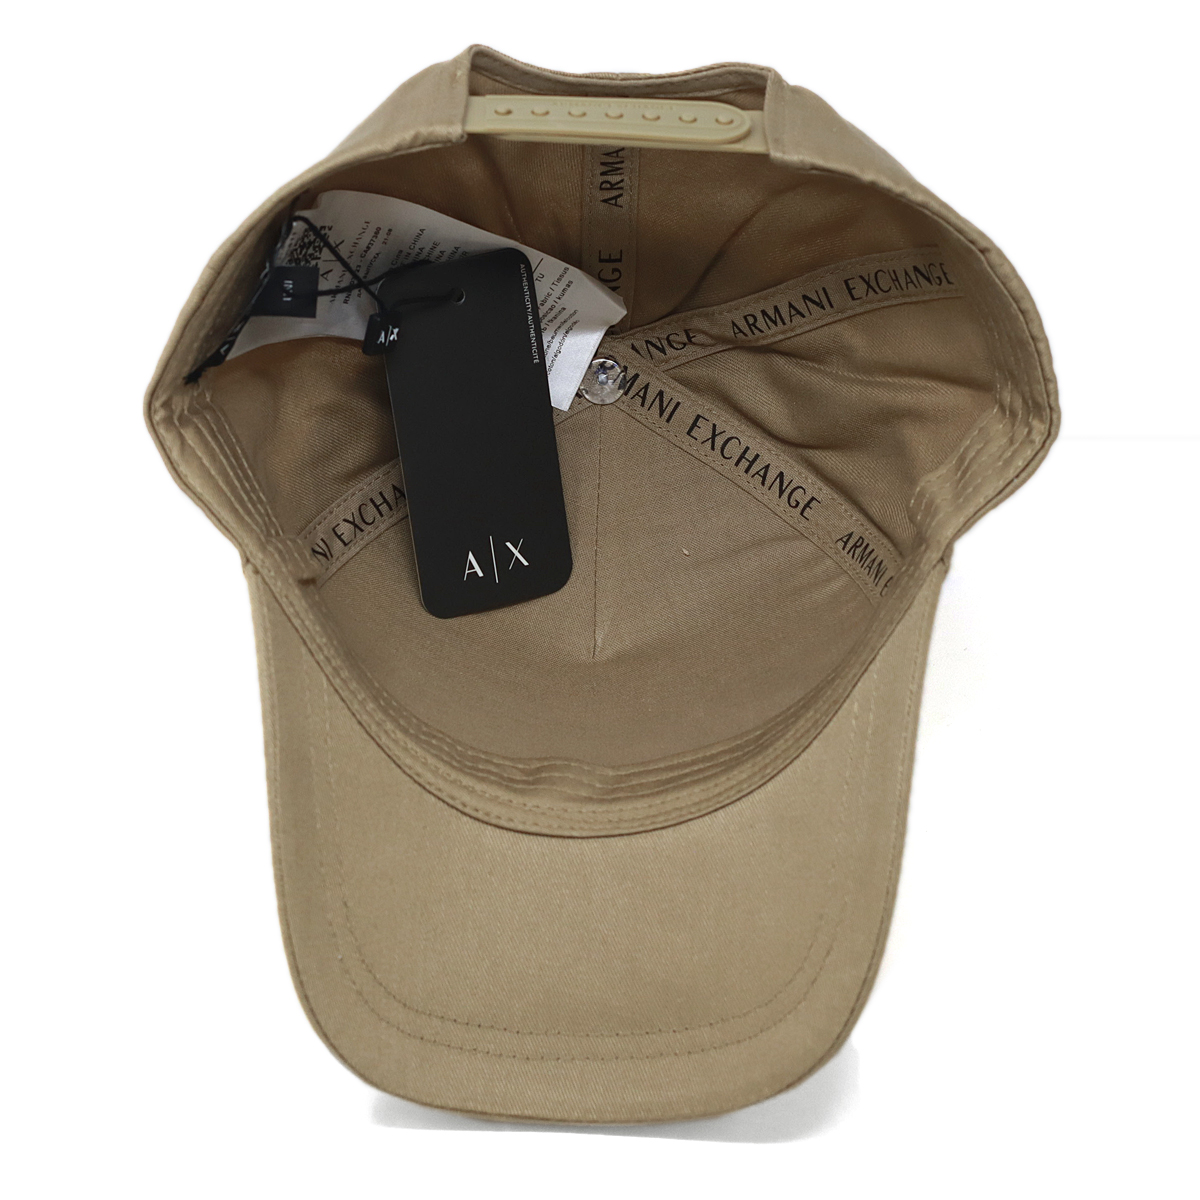 アルマーニ 帽子 キャップ ブランド メンズ アルマーニエクスチェンジ スナップバック 立体刺繍ロゴ ゴルフ 正規輸入品 A|X Armani  Exchange